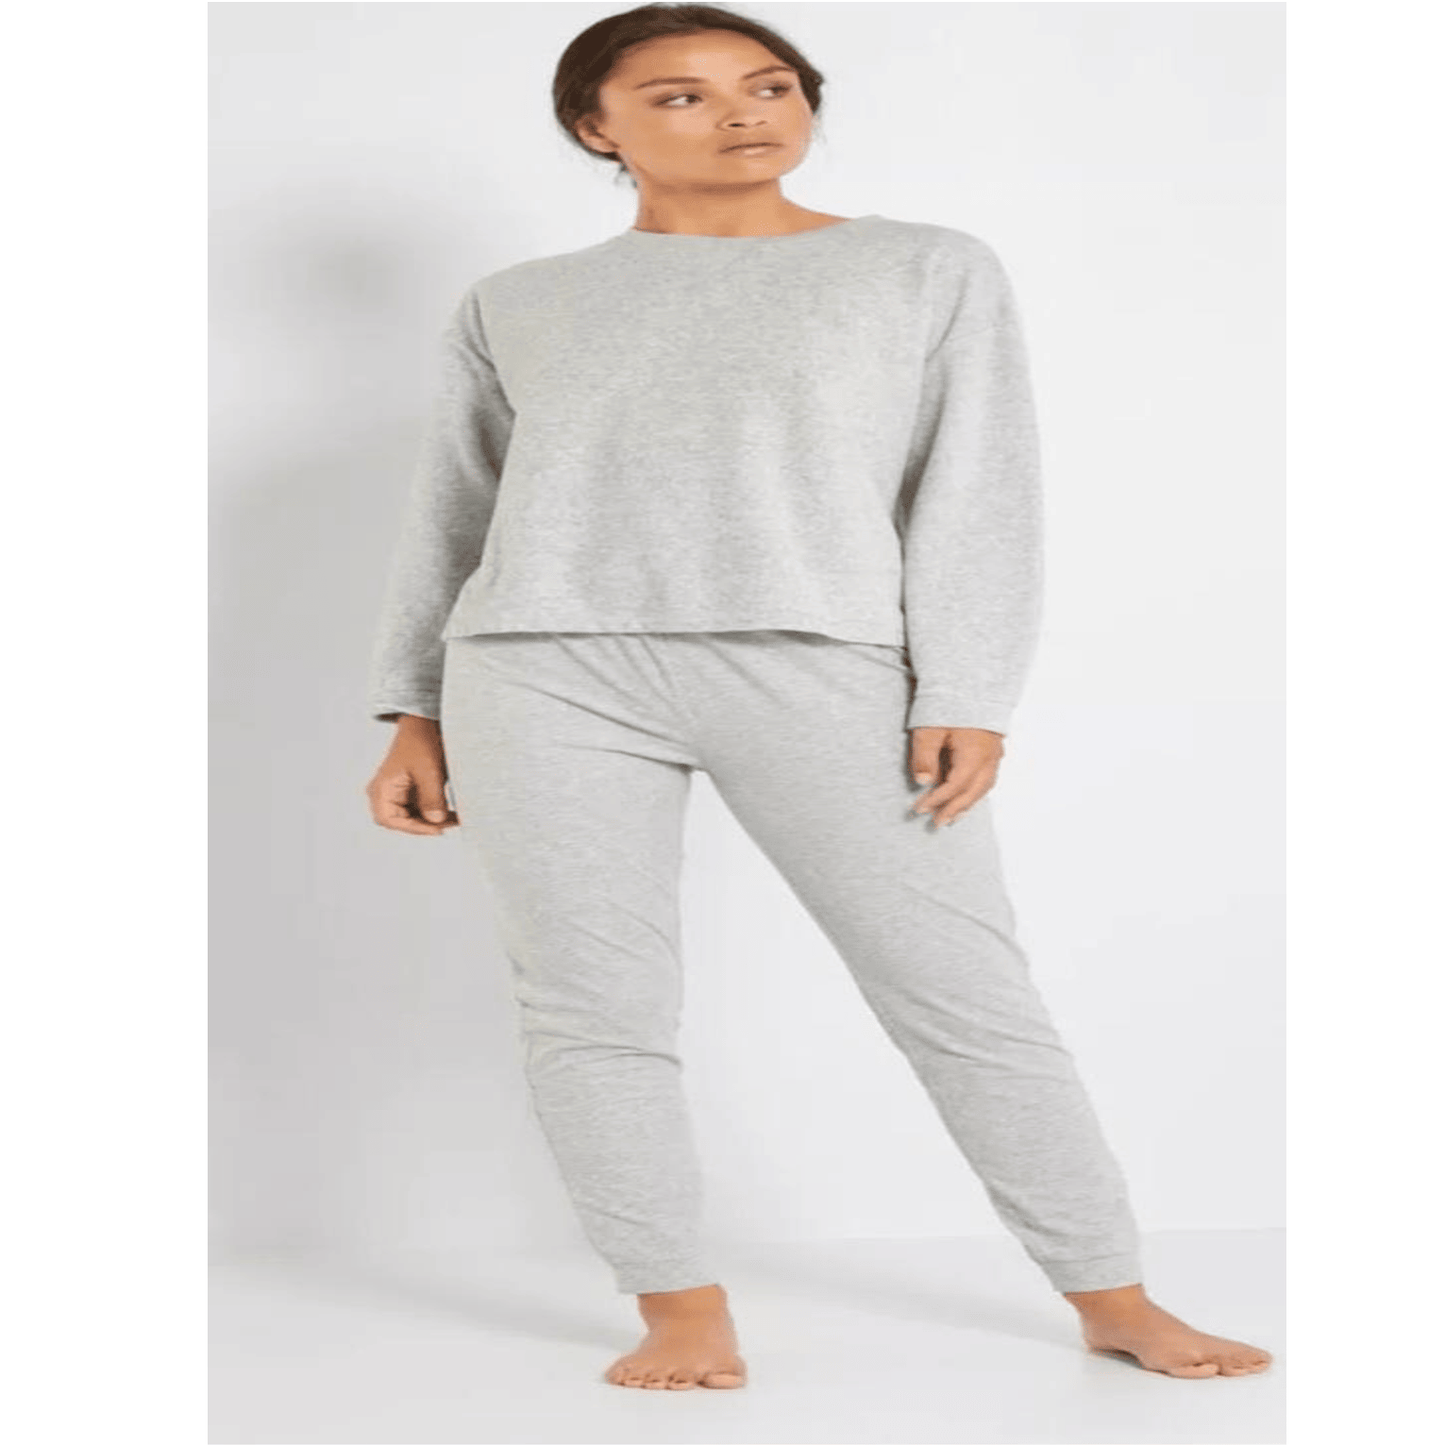 Pijama térmico mujer con Cobre de Invierno , GRUESO, nuevo, liquidación.